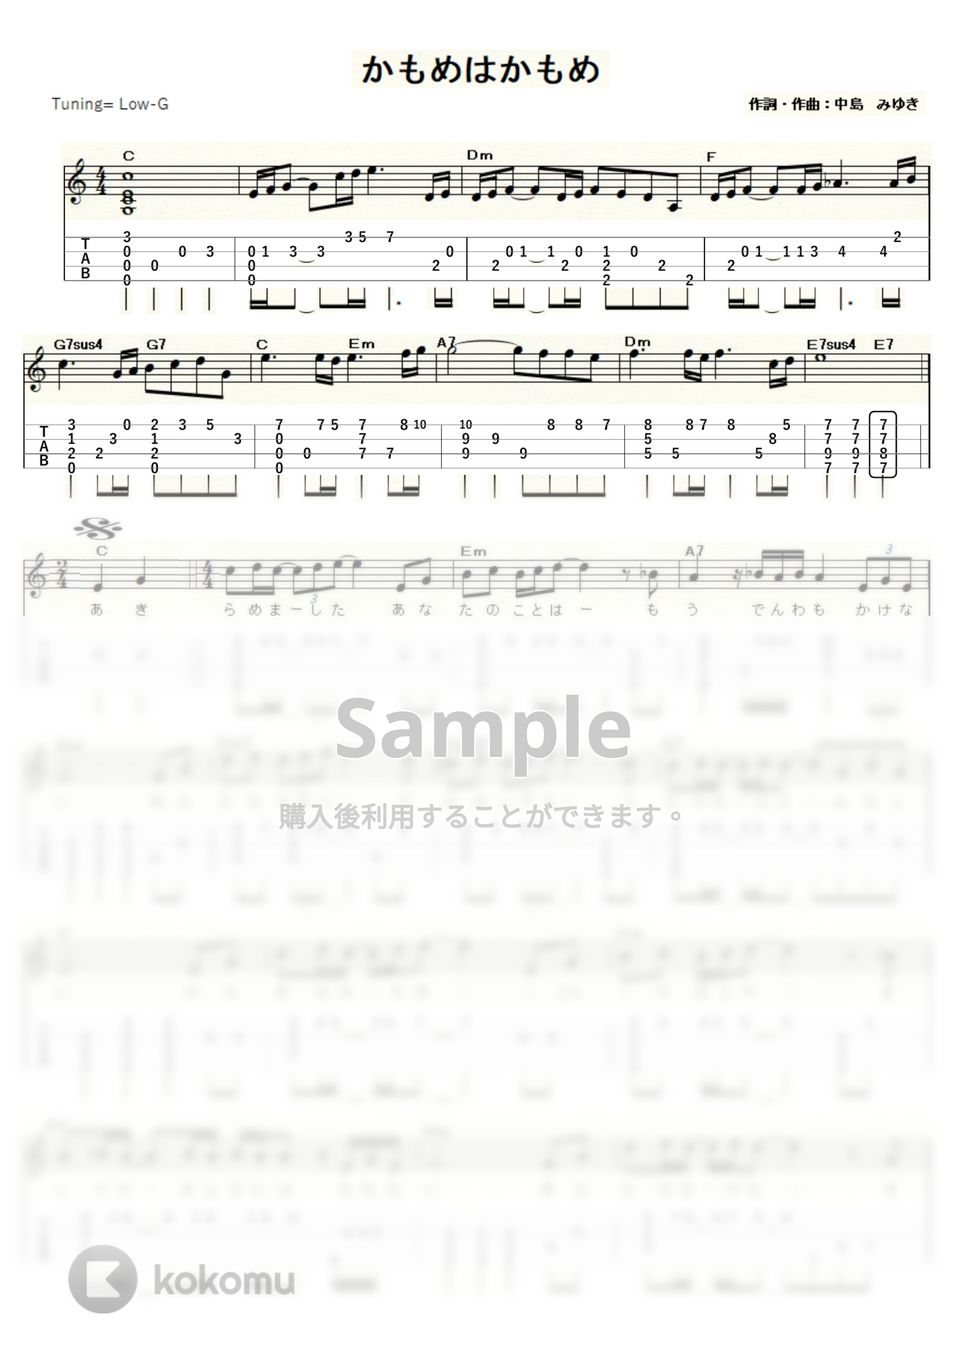 研ナオコ - かもめはかもめ (ｳｸﾚﾚｿﾛ / Low-G / 中～上級) by ukulelepapa